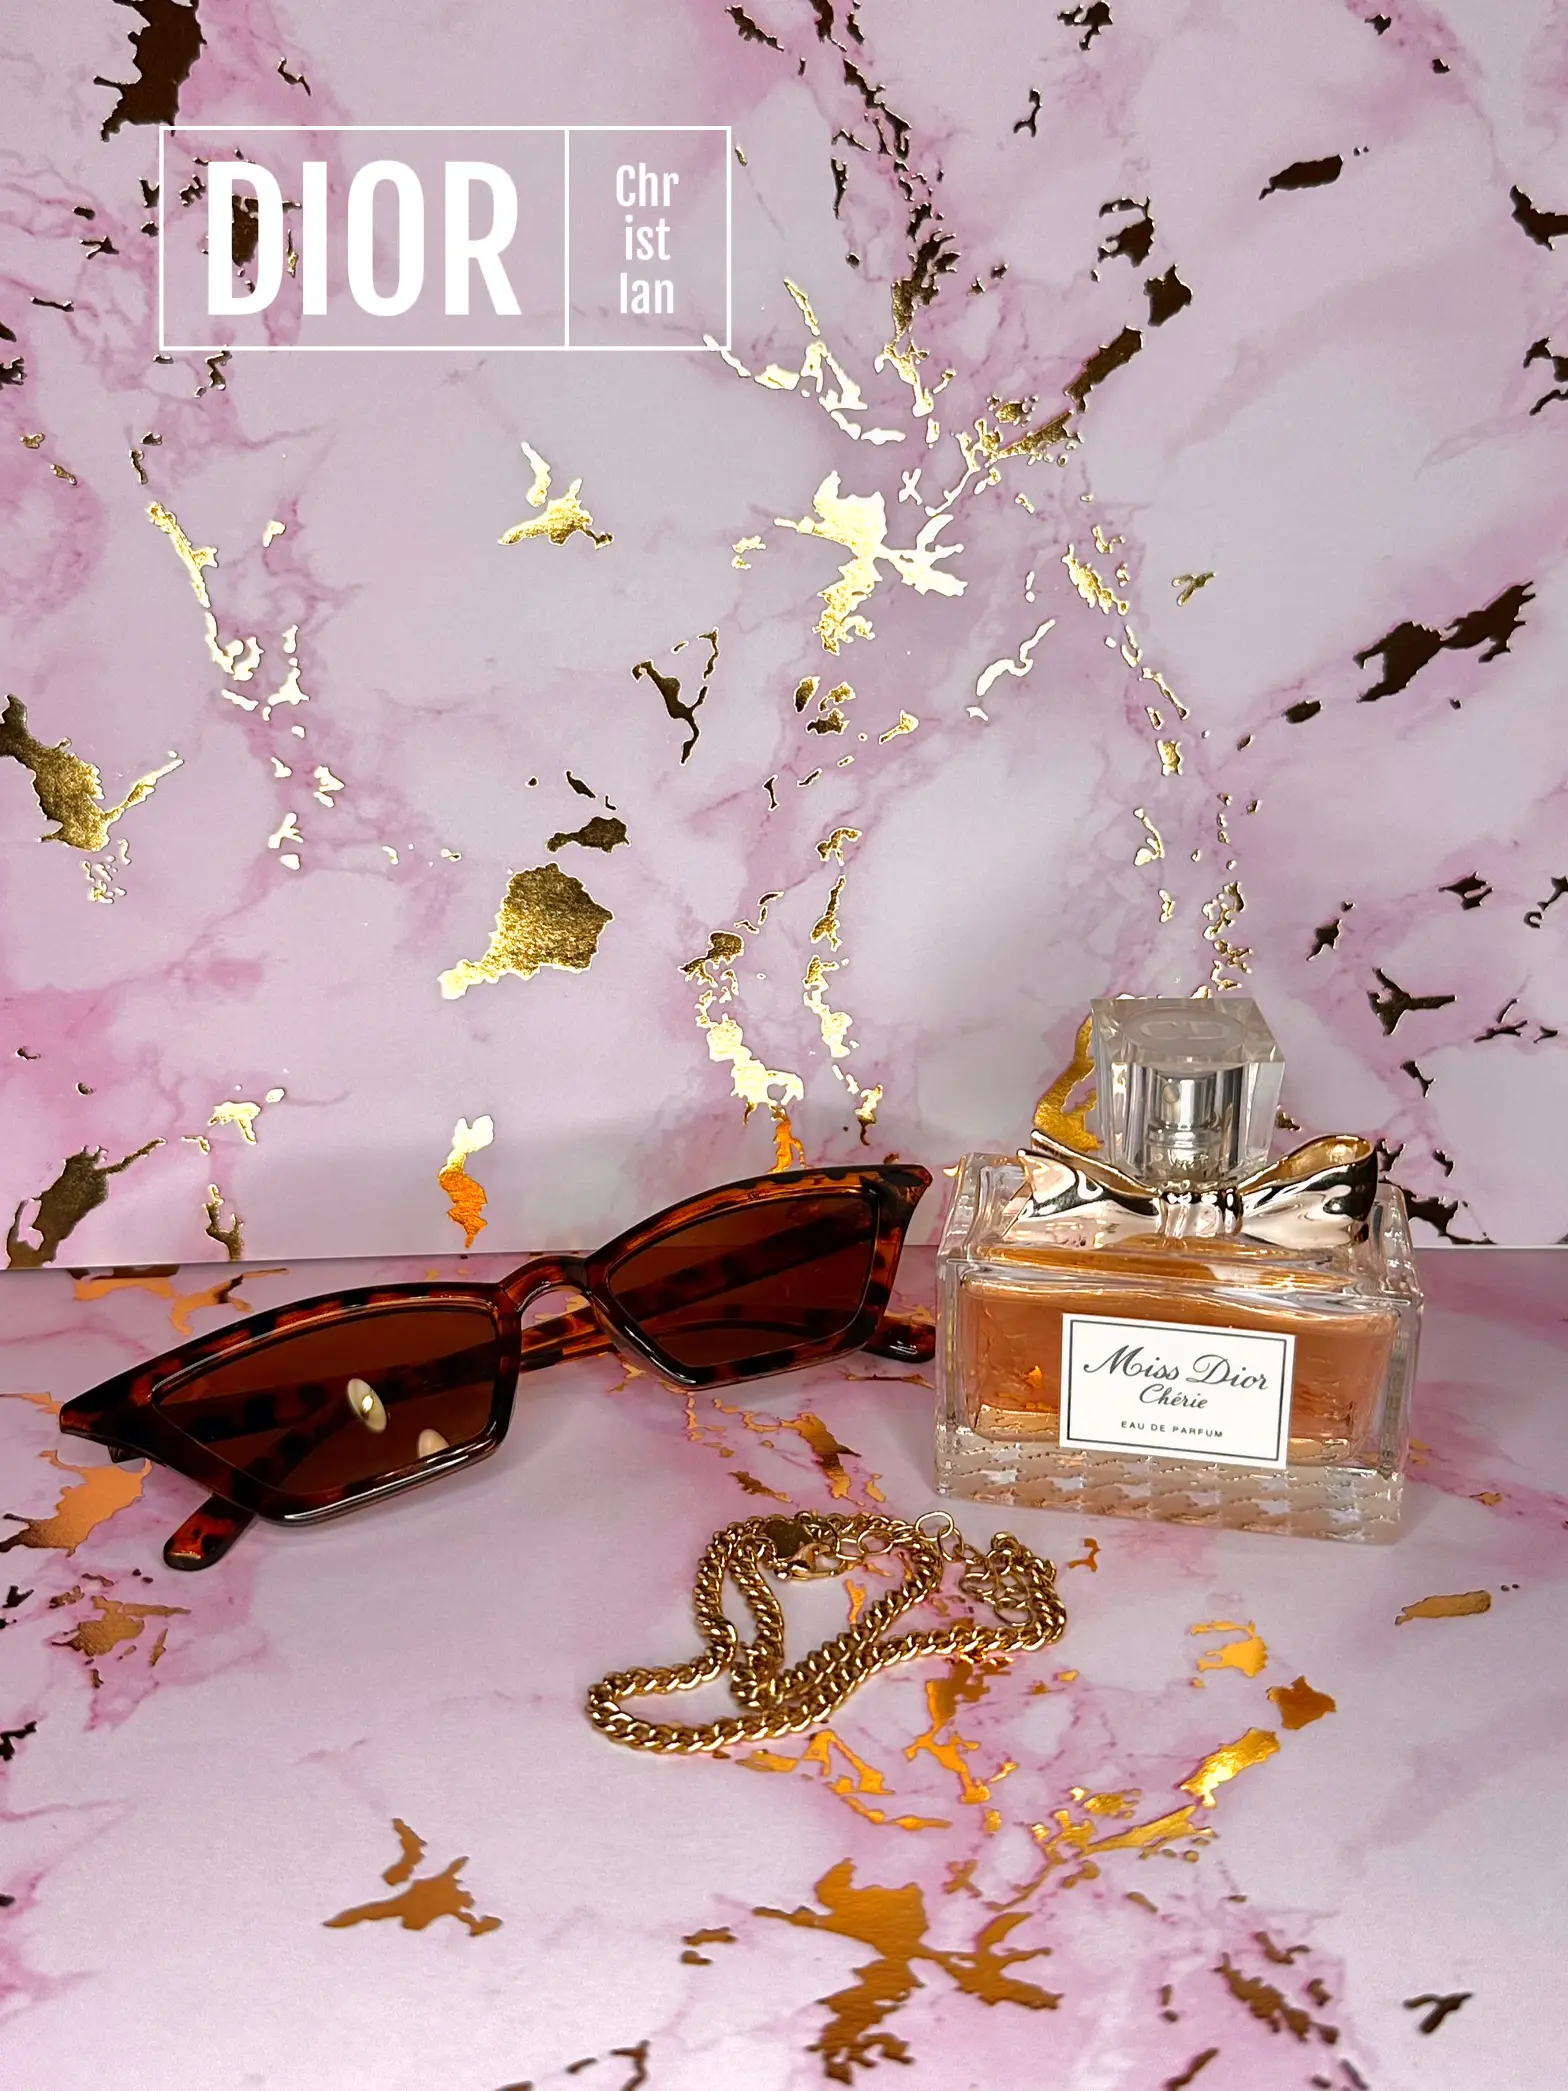 Creme De Pistache Sphinx Fragrances perfume - a new fragrance for women and  men 2023